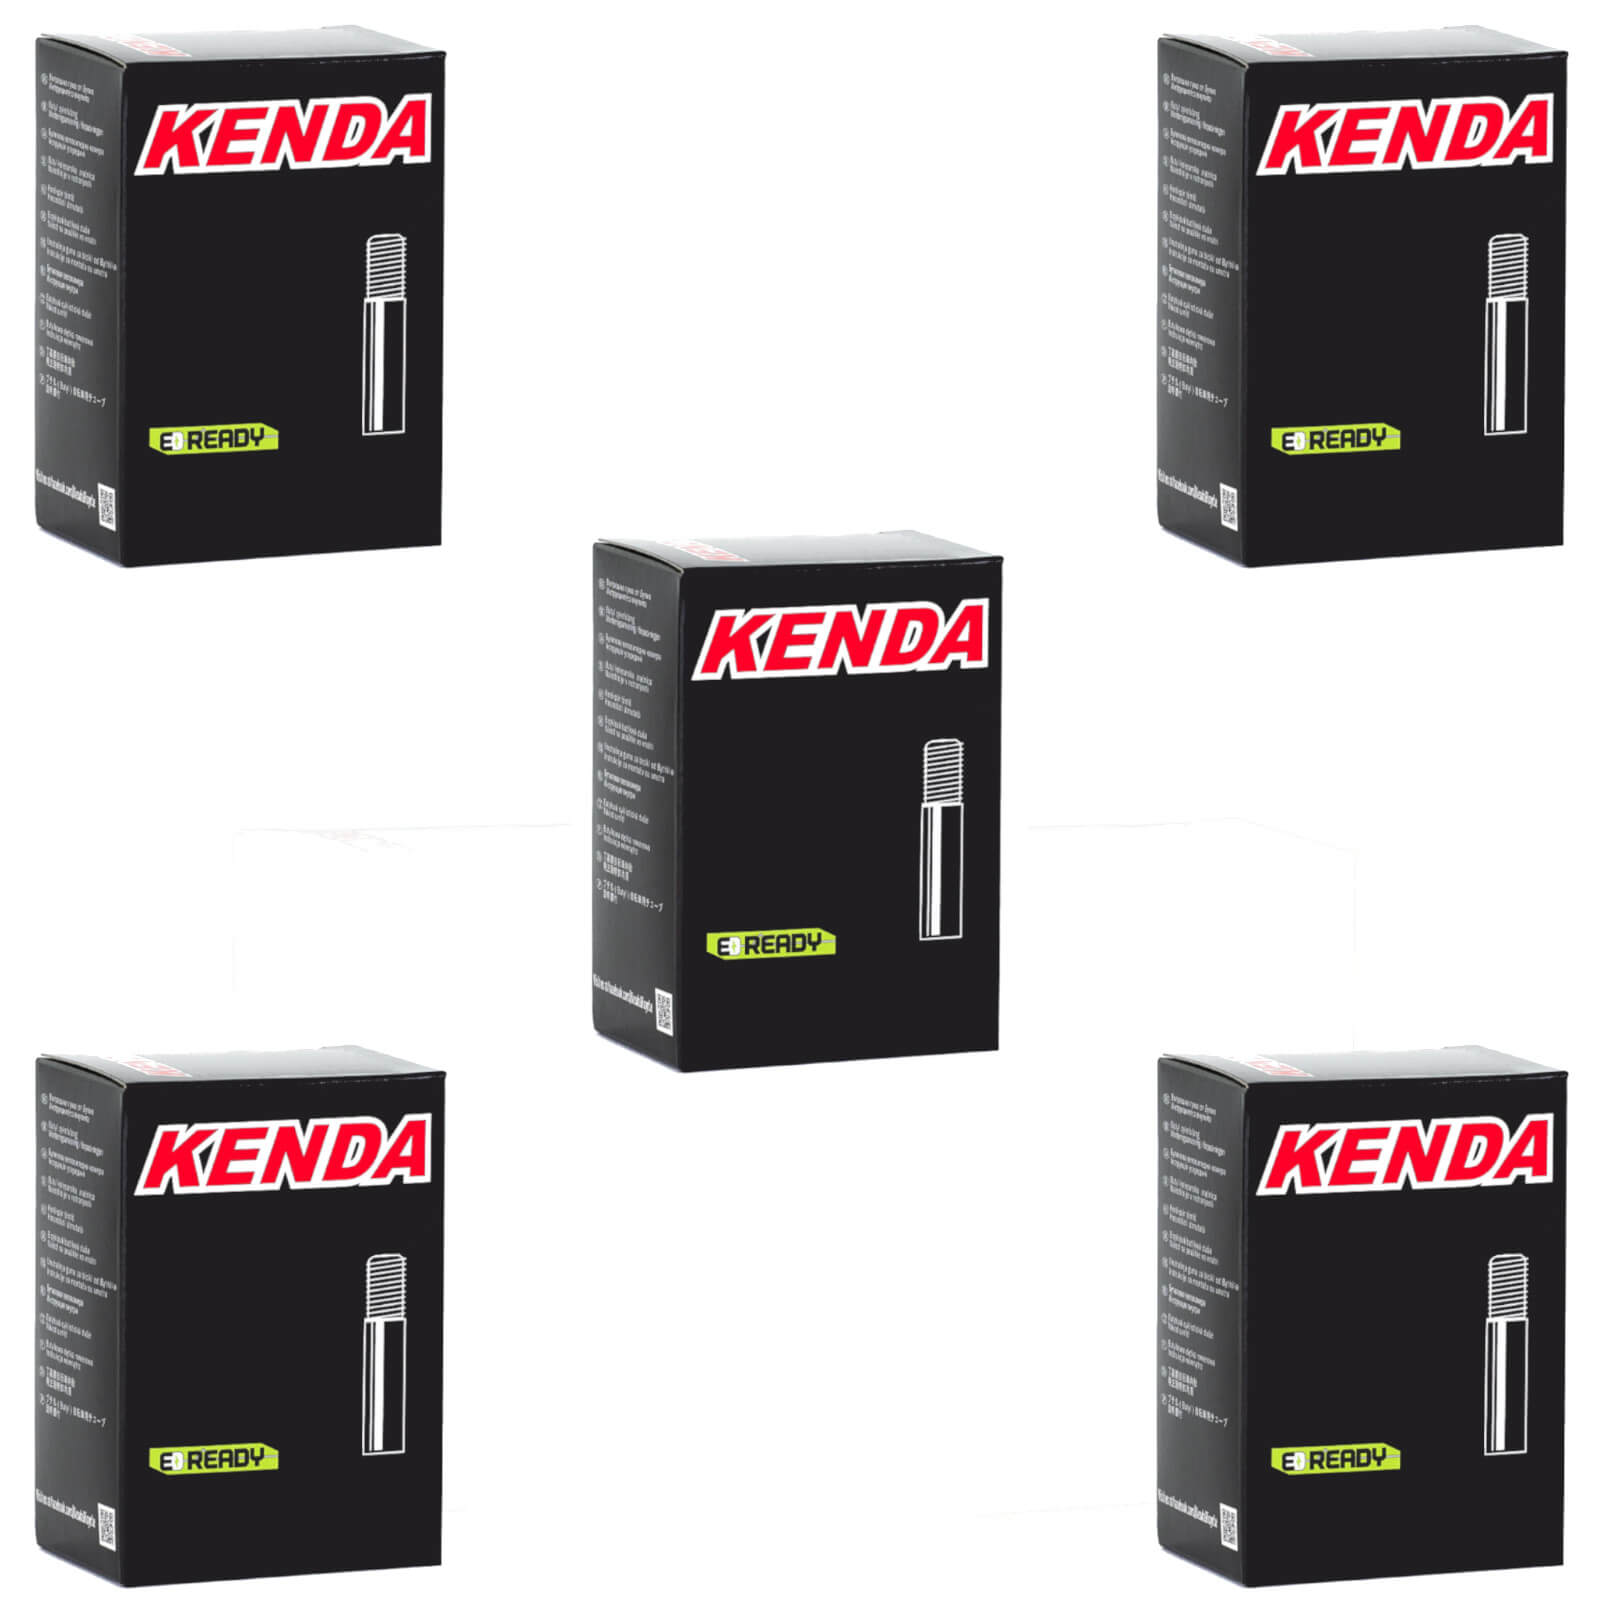 Kenda 16x1-1/4"-1-3/8"" 16 Inch Schrader Valve Bike Inner Tube Pack of 5